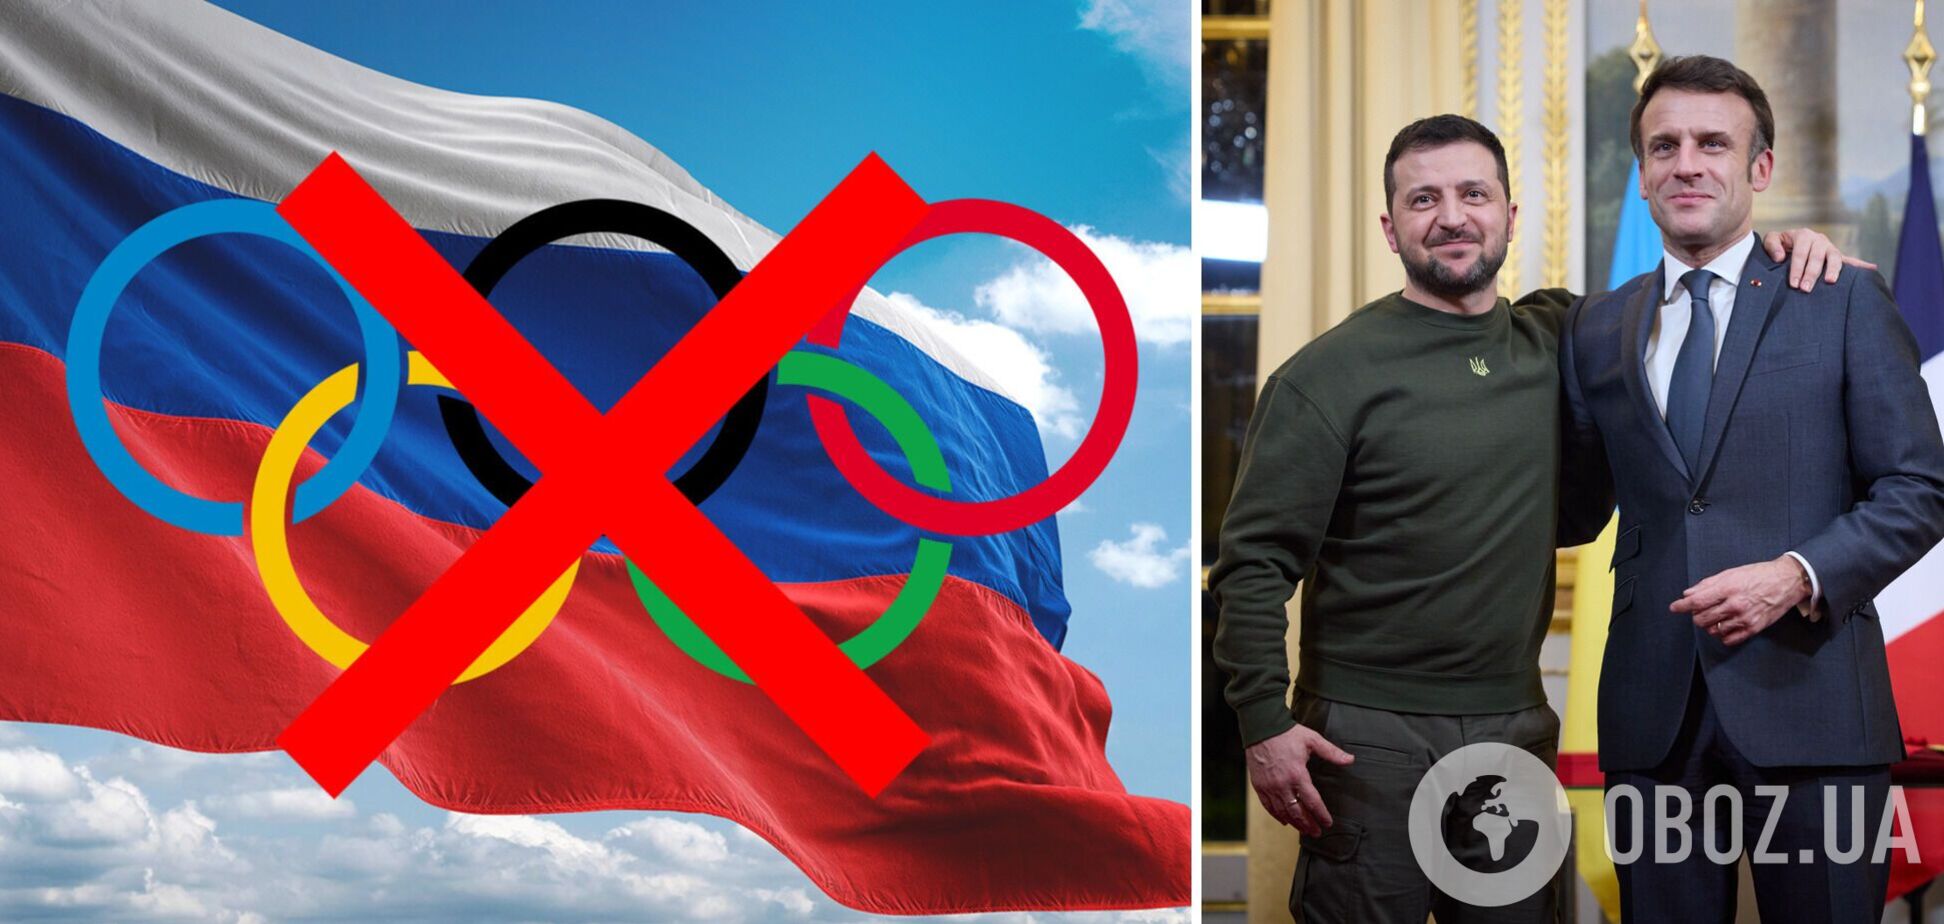 'Я объяснил': Макрон обсудил с Зеленским допуск России к Олимпиаде-2024